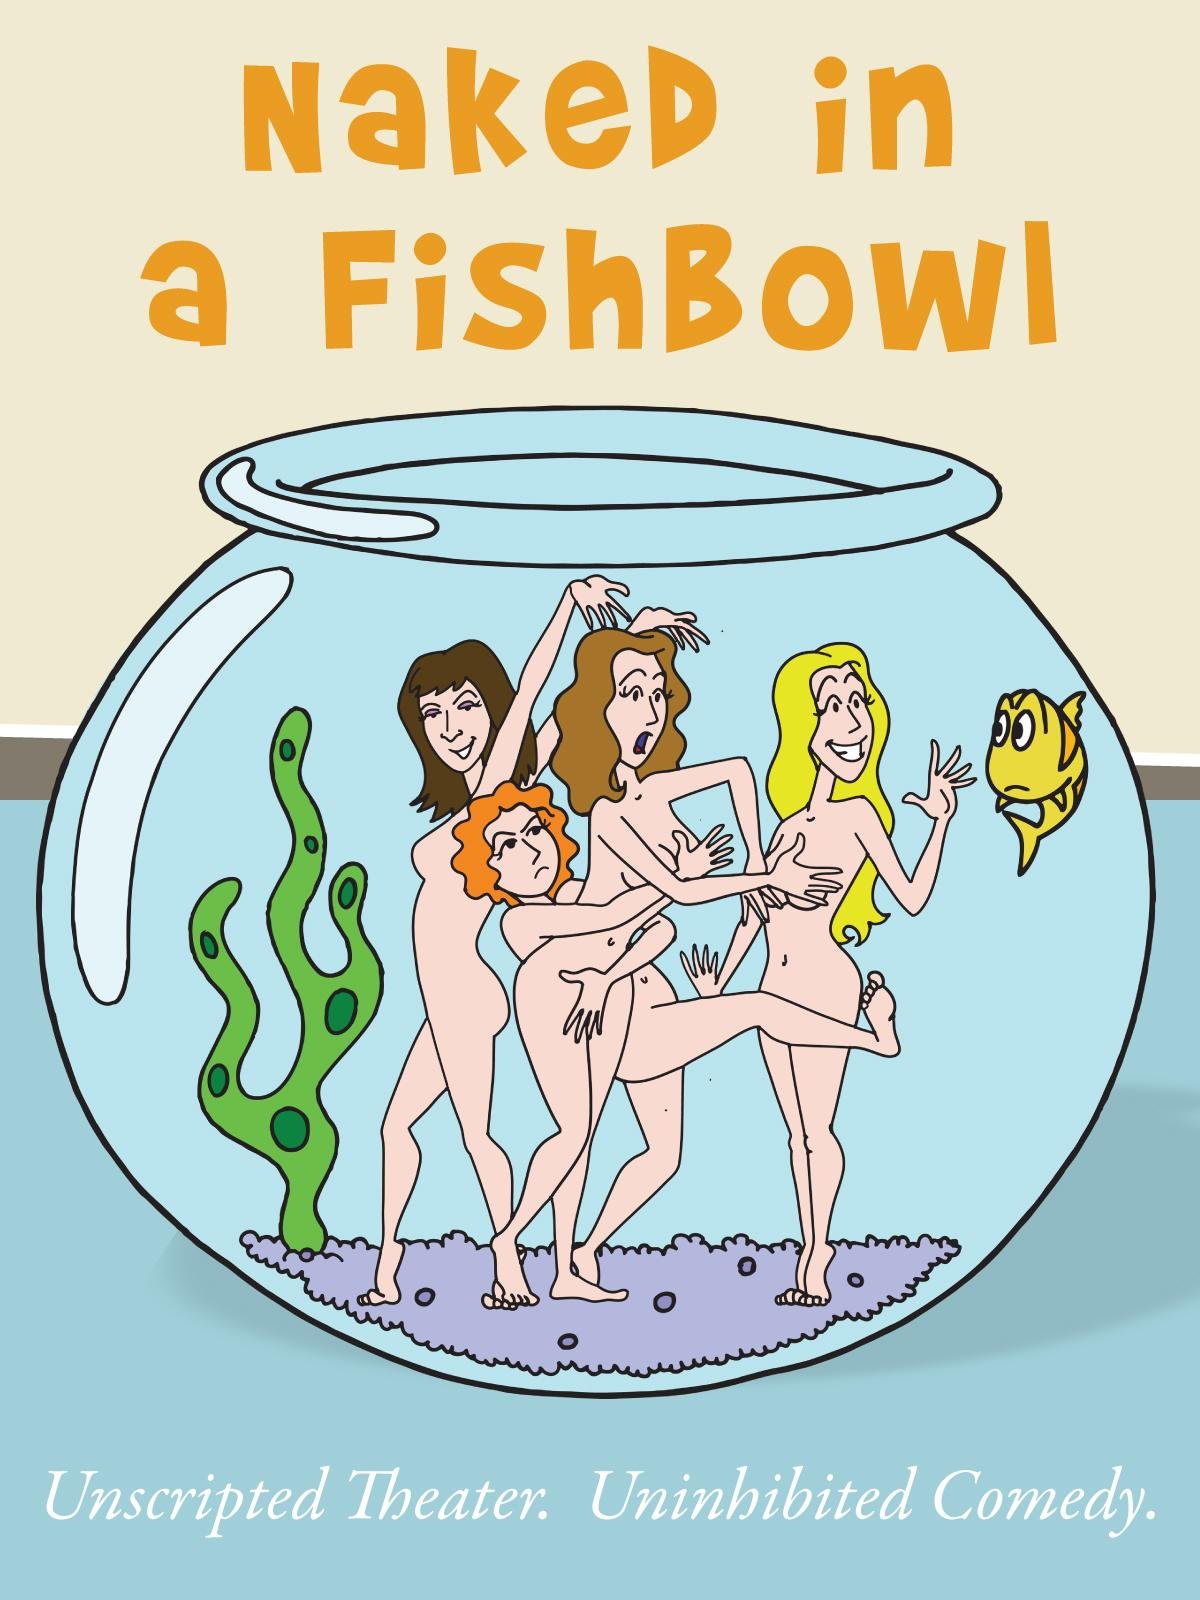 The fish bowl naked